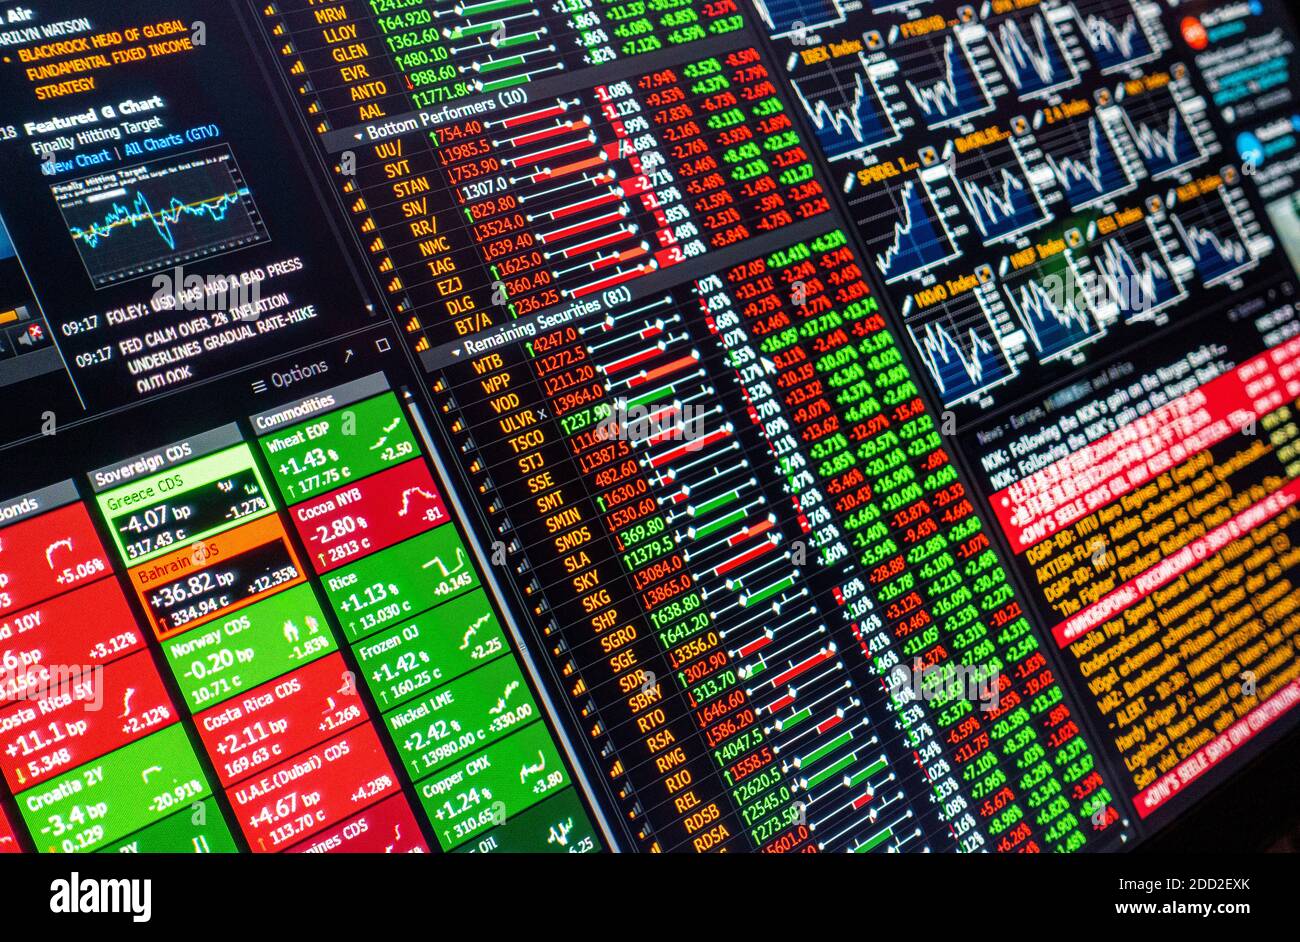 Nahaufnahme des Computerbildschirms mit Finanzdaten der Börse Märkte Aktien Aktien Rohstoffe Credit Default Swaps CDS Aktienmarkt nachrichten Stockfoto